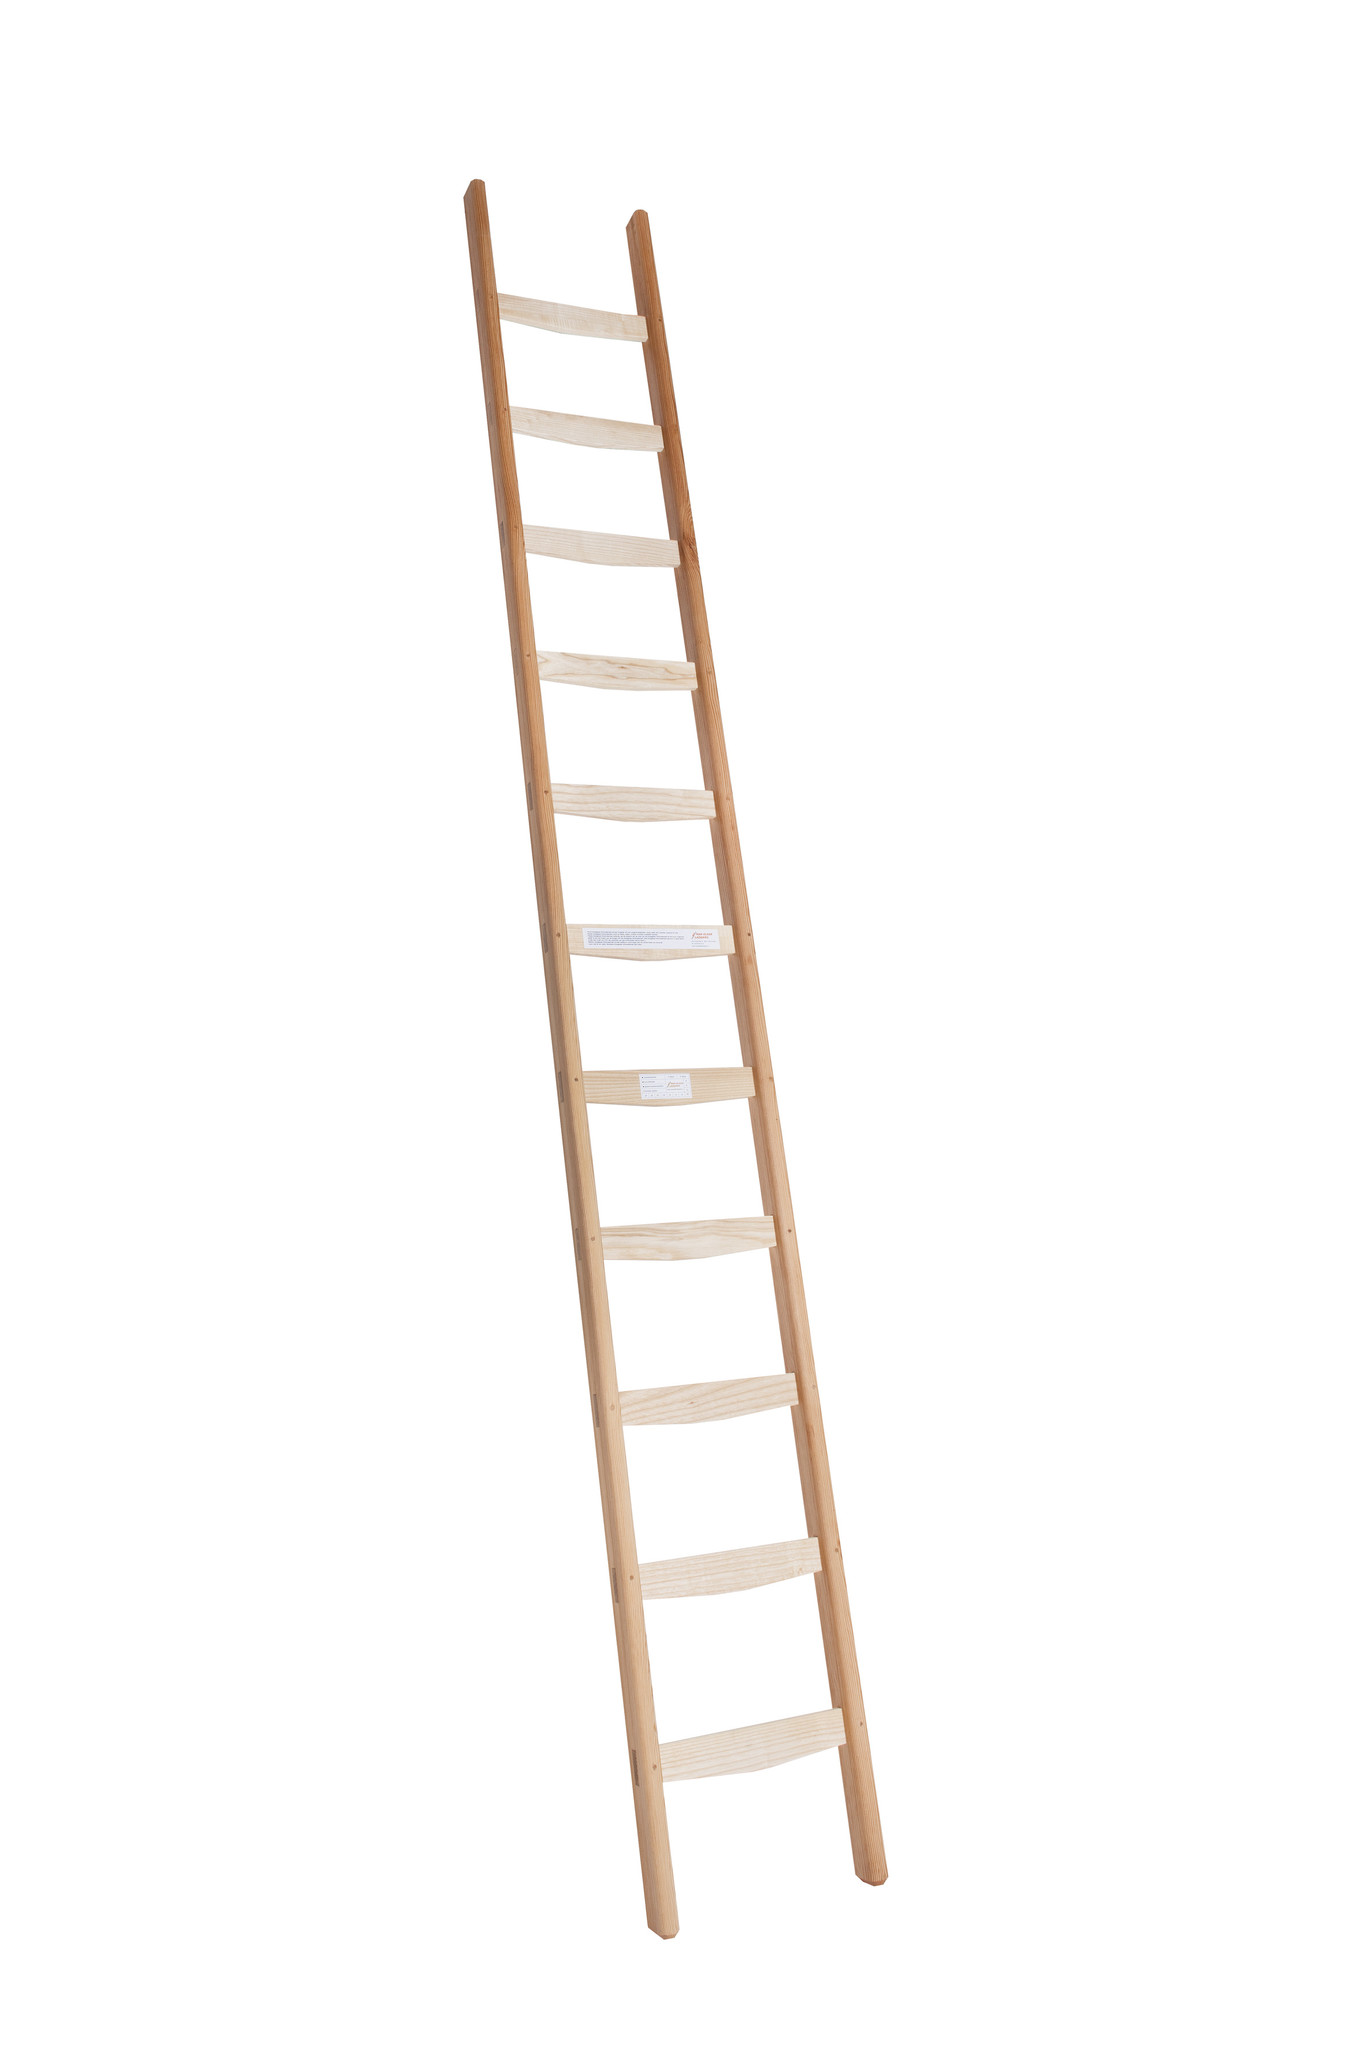 revolutie Montgomery gastheer Houten enkele ladder kopen? - vaneldikladders.nl